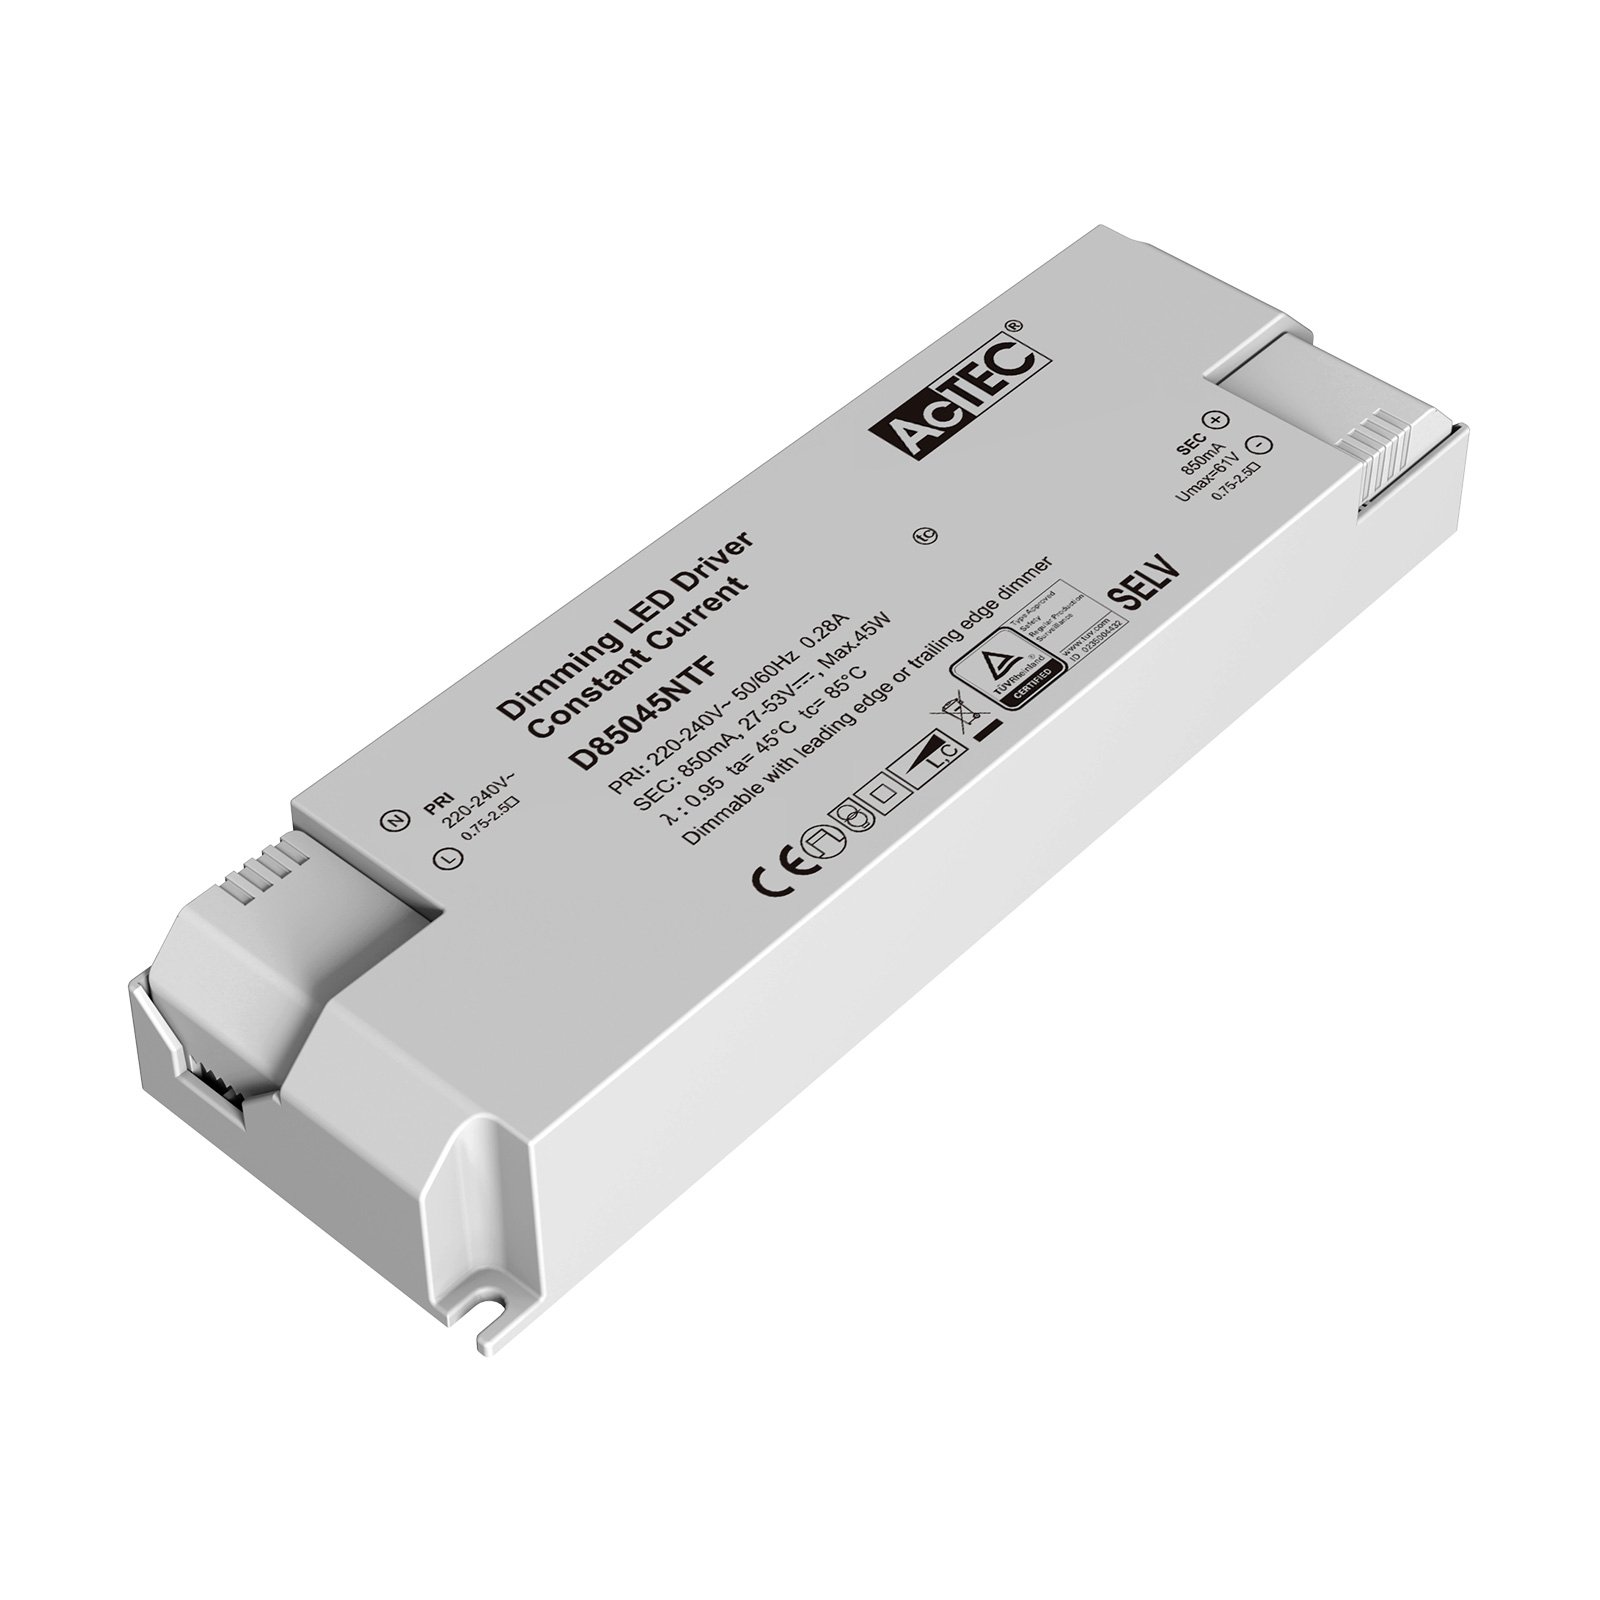 AcTEC Triac LED driver CC max. 45W 850mA